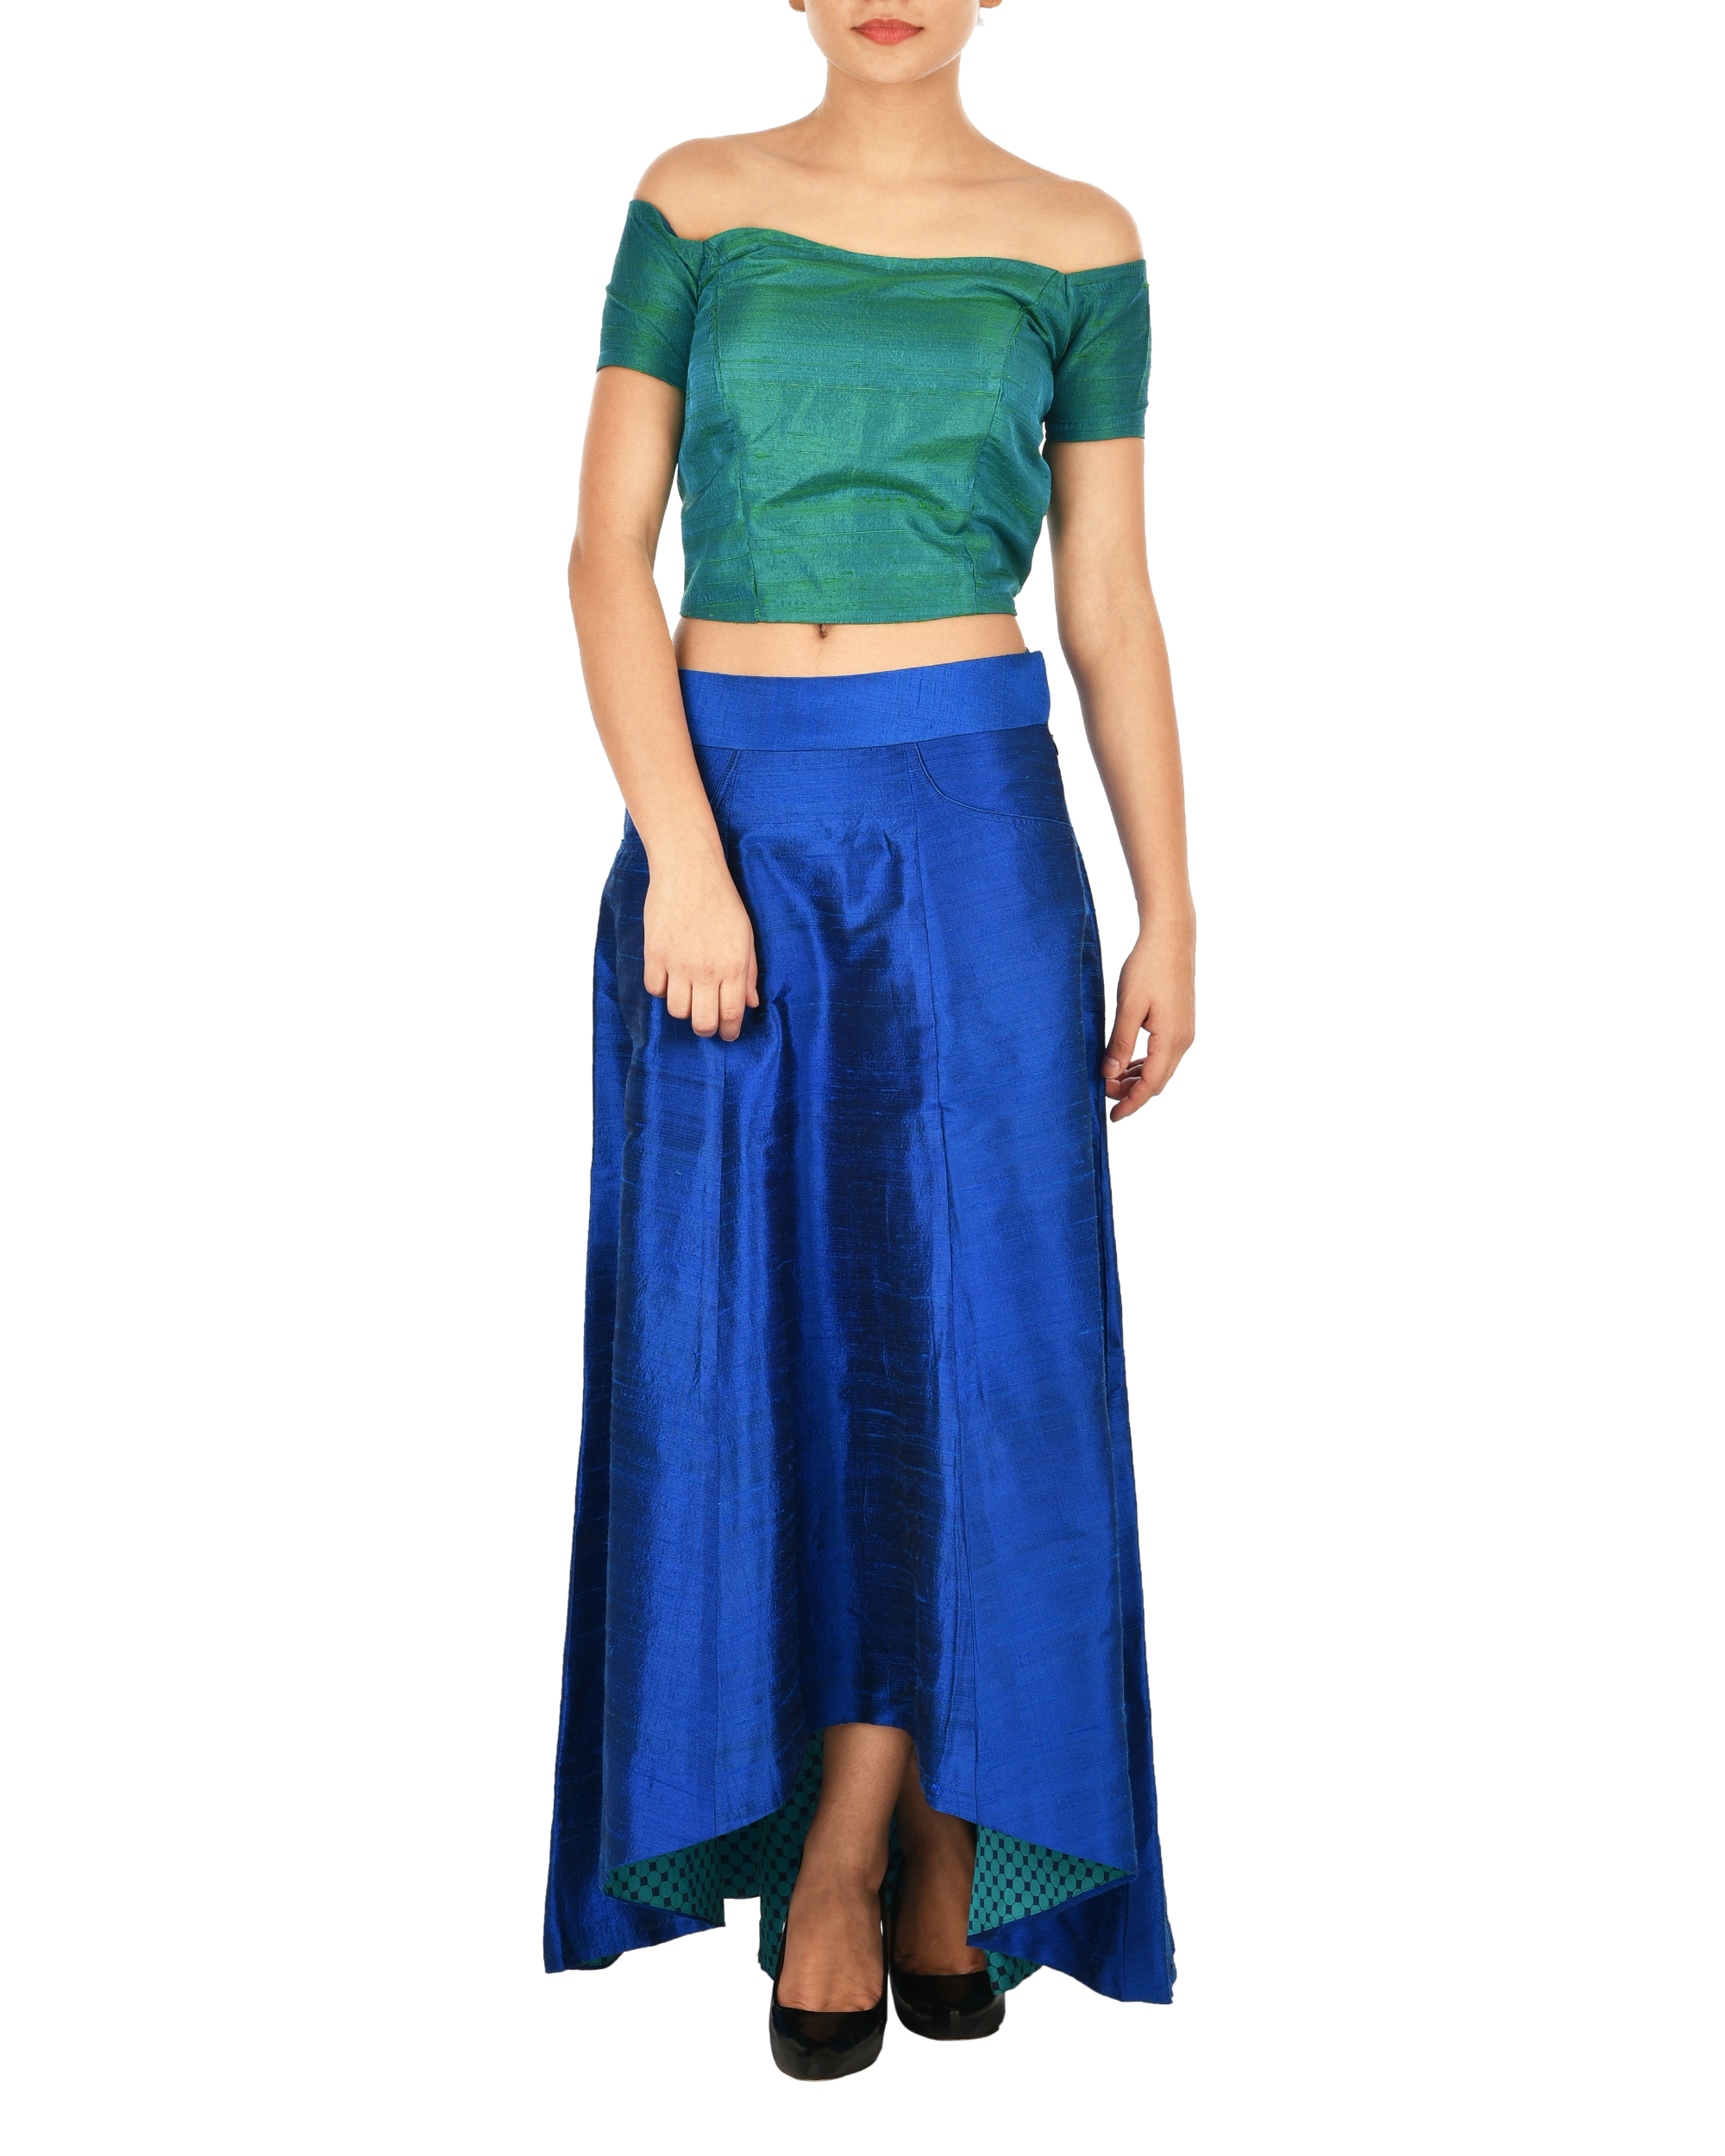 blue skirt green top